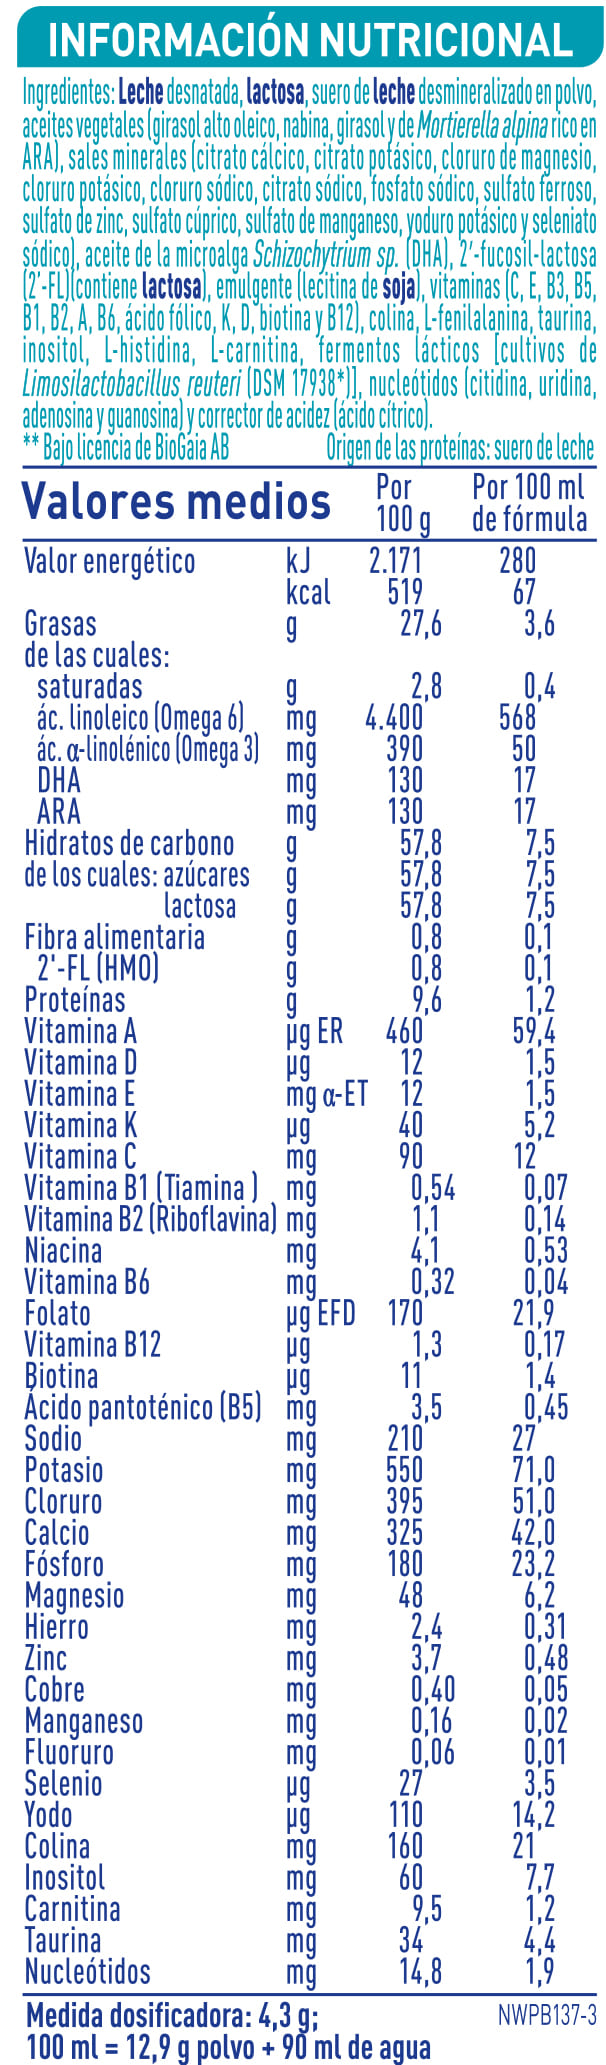 Nestlé leche Nan 1 - Farmacia Maestre